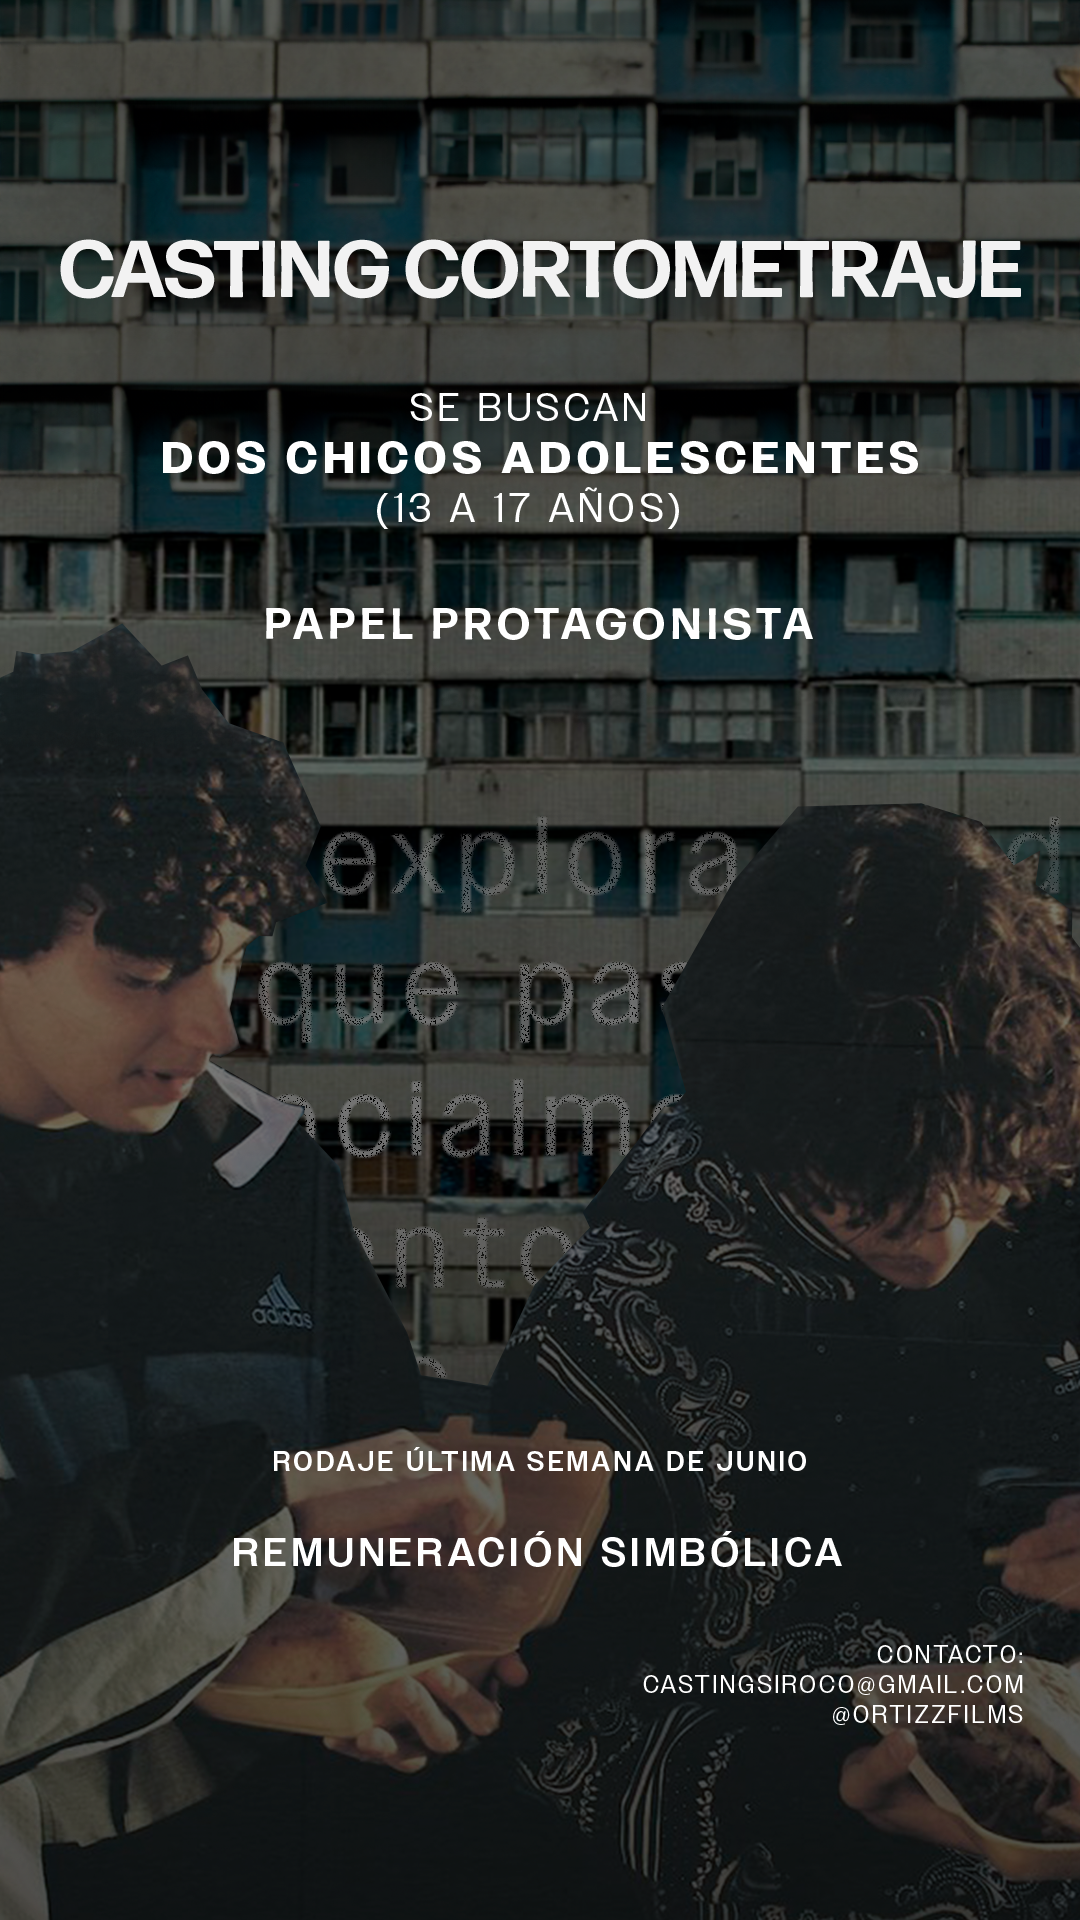 Adolescentes de 13 a 17 años para protagonizar Cortometraje en Madrid